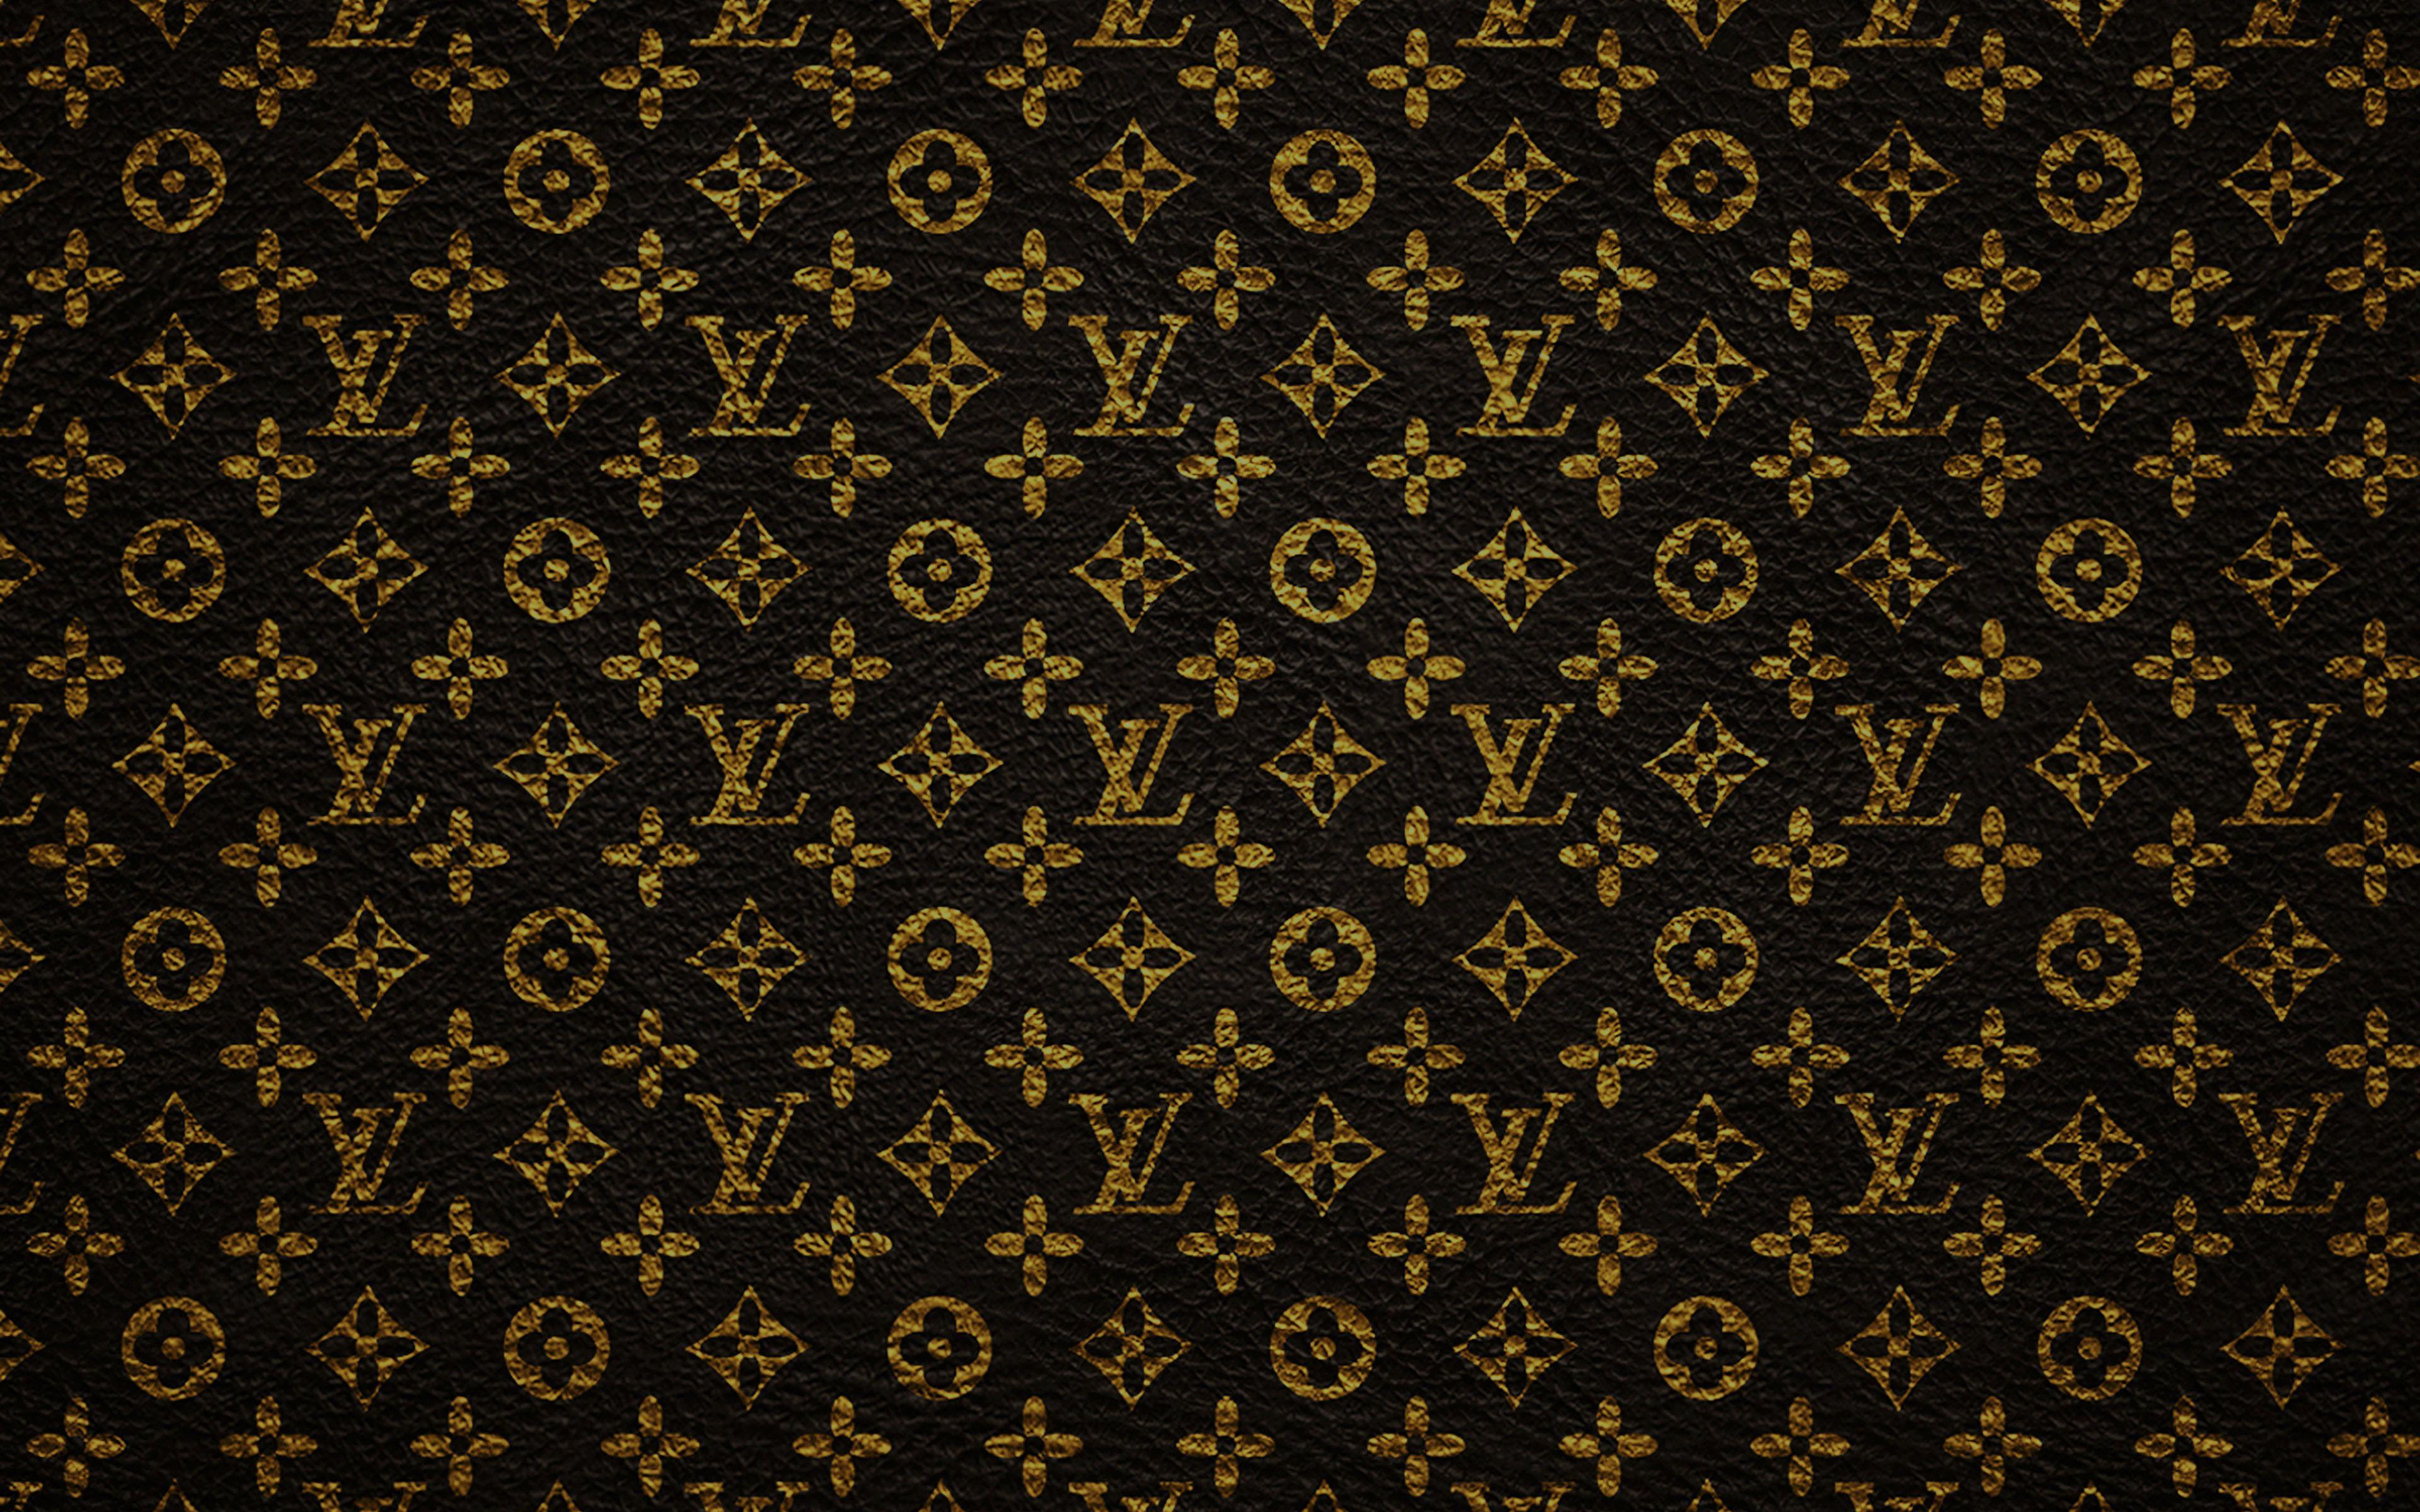 Hình nền Louis Vuitton vàng: Bạn đang tìm kiếm một hình nền đẹp cho màn hình điện thoại hay máy tính của mình? Màu vàng sang trọng của Louis Vuitton chắc chắn sẽ là một lựa chọn hoàn hảo cho bạn. Bộ sưu tập này với chất liệu vải cao cấp và thiết kế tinh tế sẽ giúp bạn tạo nên một phong cách đậm chất sang trọng.